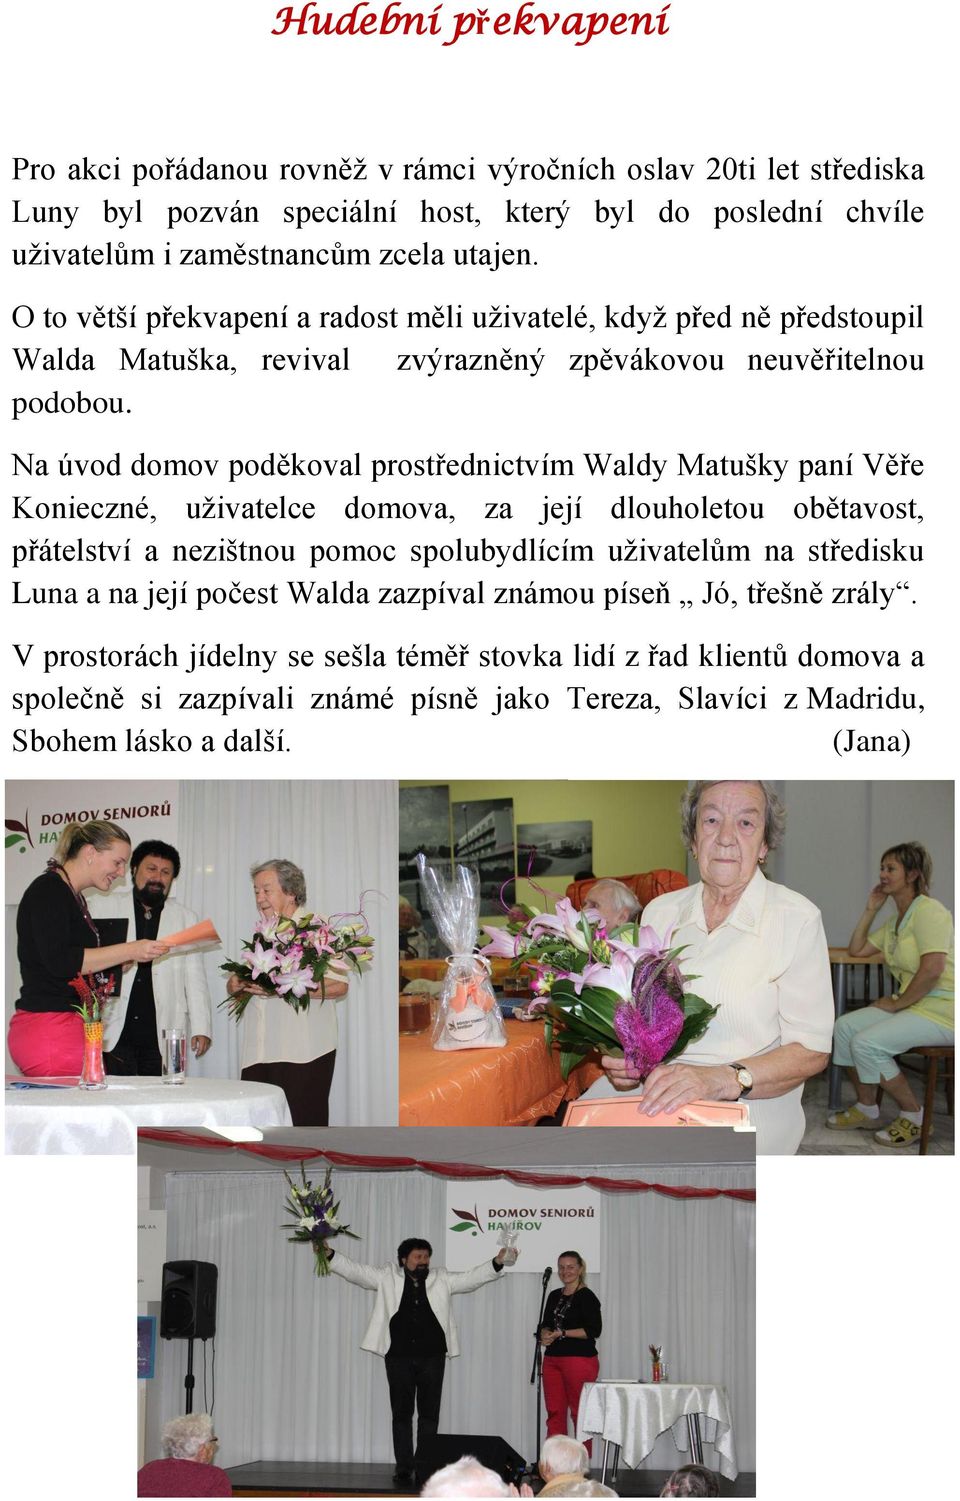 Na úvod domov poděkoval prostřednictvím Waldy Matušky paní Věře Konieczné, uživatelce domova, za její dlouholetou obětavost, přátelství a nezištnou pomoc spolubydlícím uživatelům na